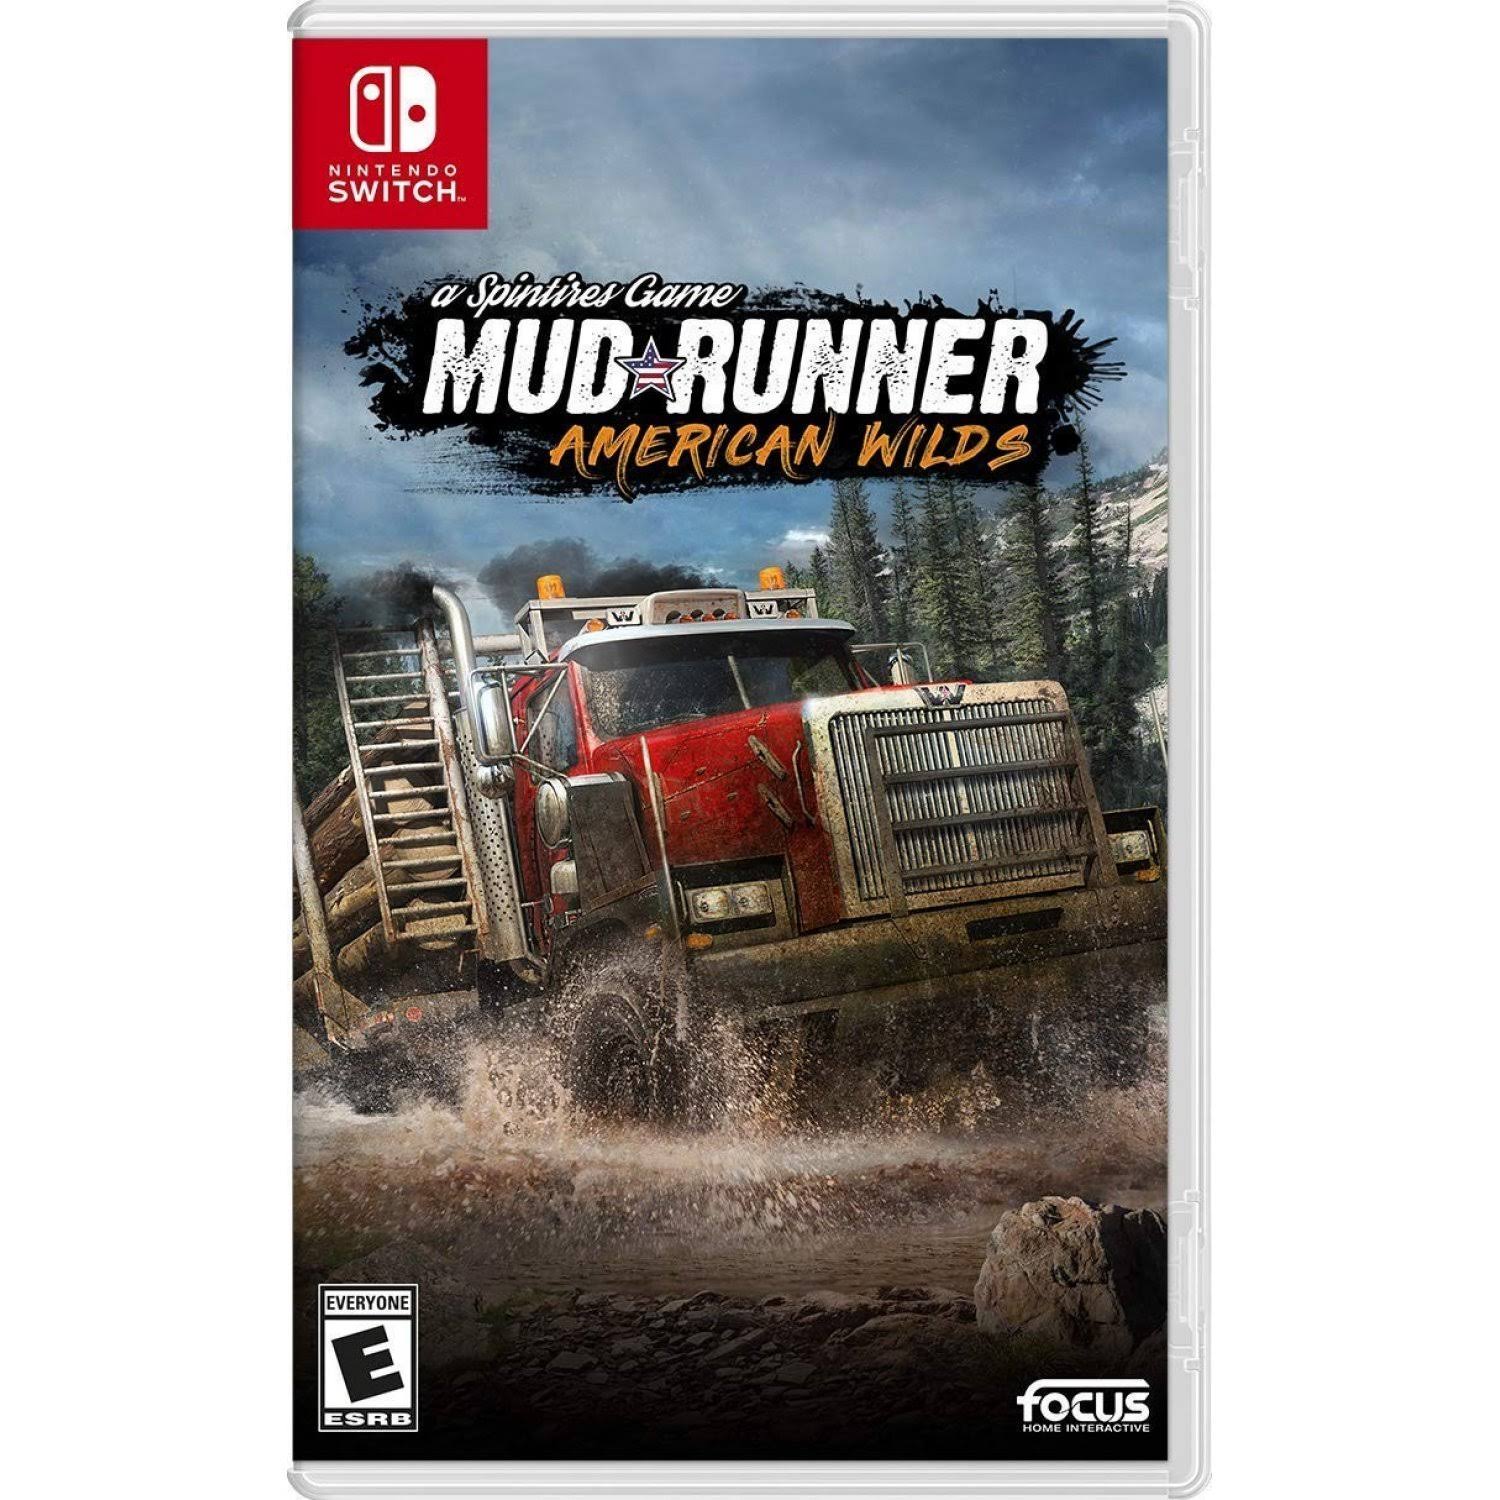 Spintires MudRunner - American Wilds - Nintendo Switch